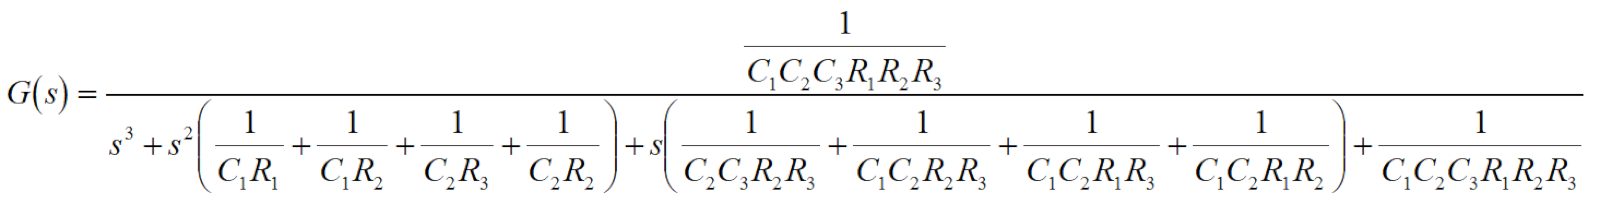 サレンキー型の3次ローパスフィルタの伝達関数